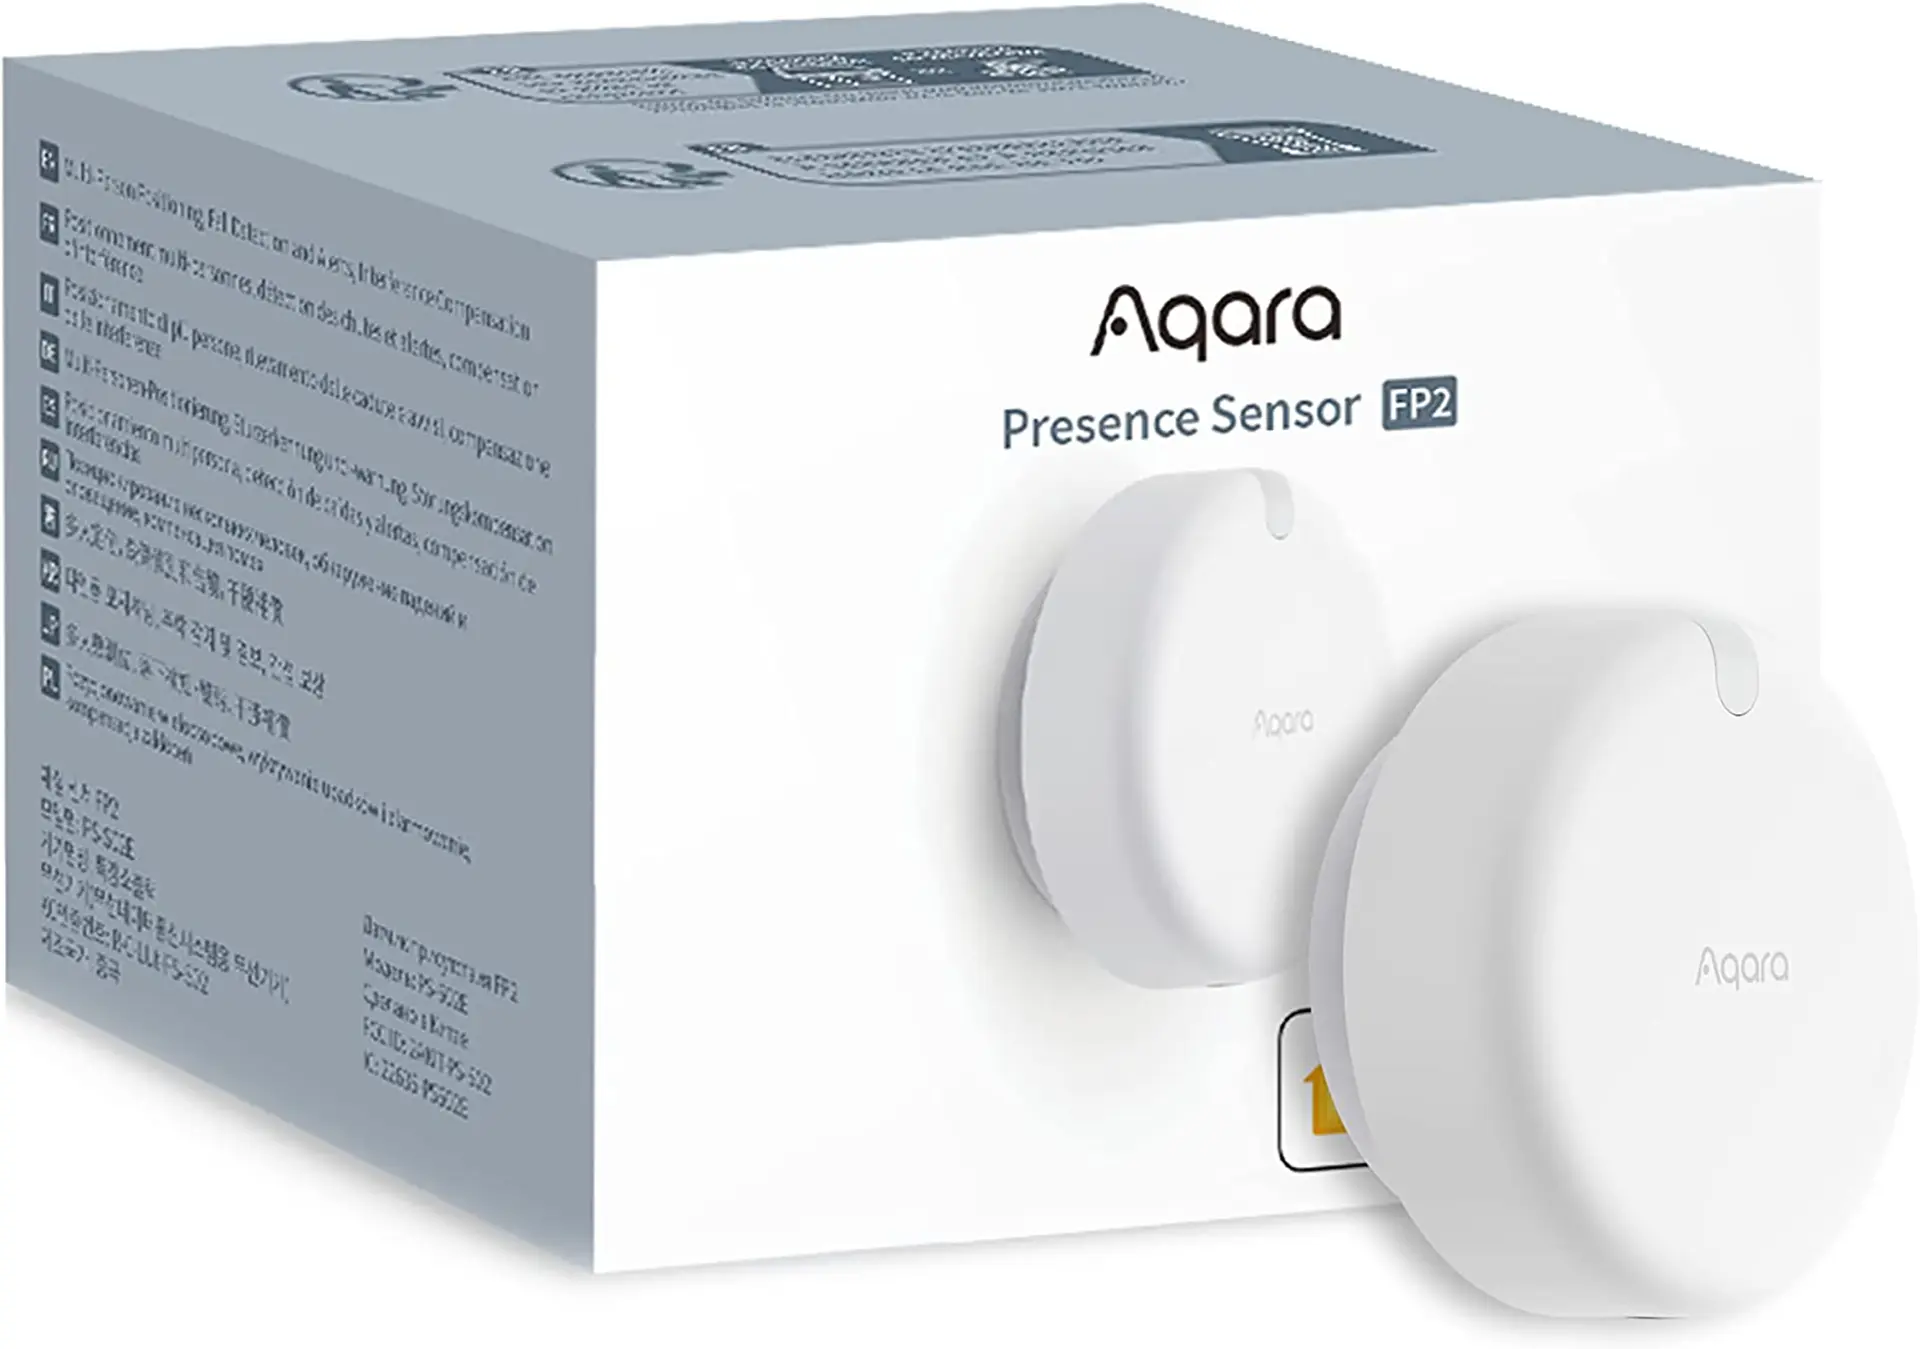 Aqara lanza el avanzado Presence Sensor FP2